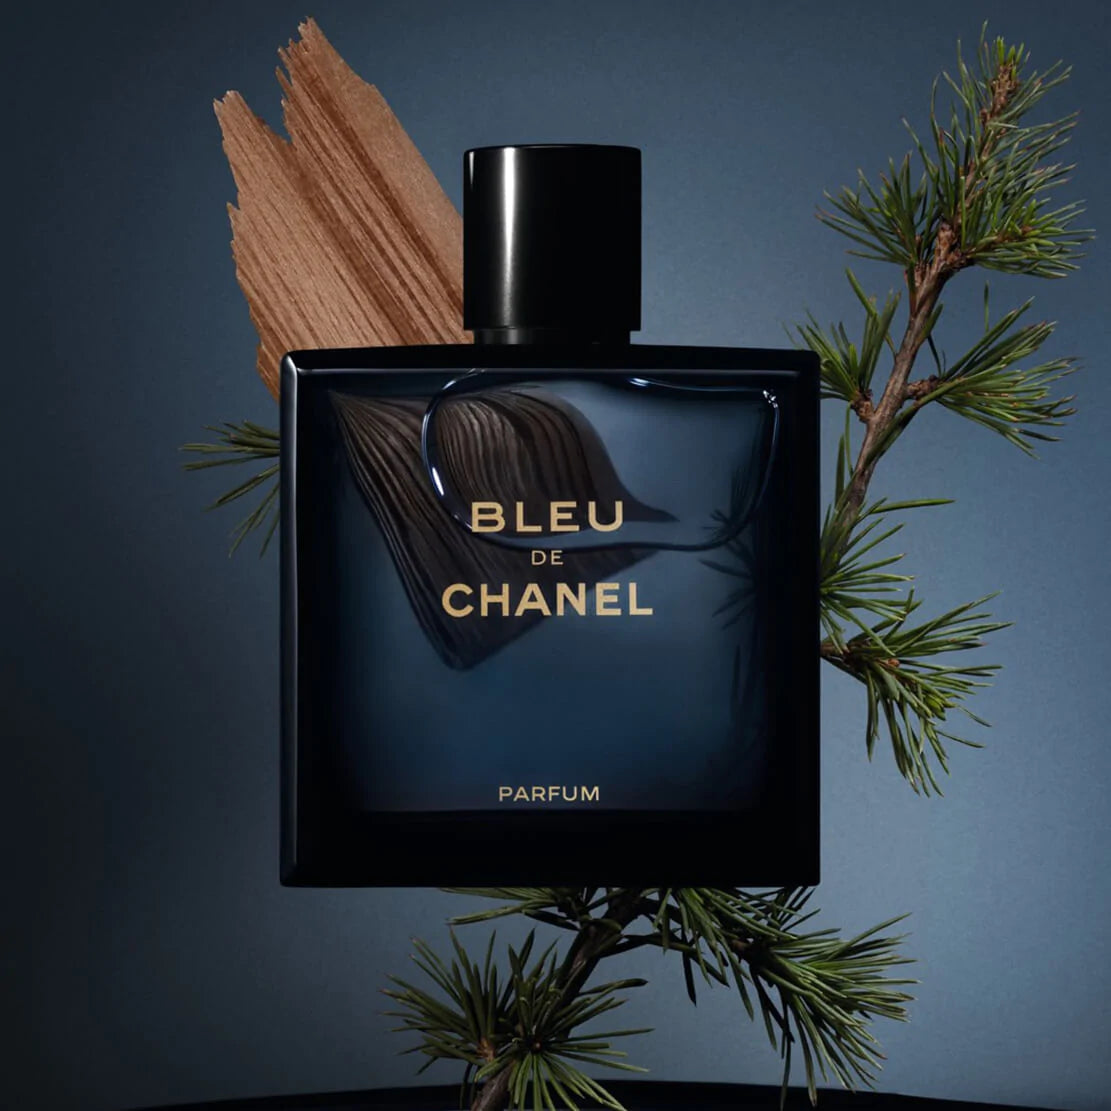 Chanel Bleu de Chanel Parfum Pour Homme for Men (150ml Tester